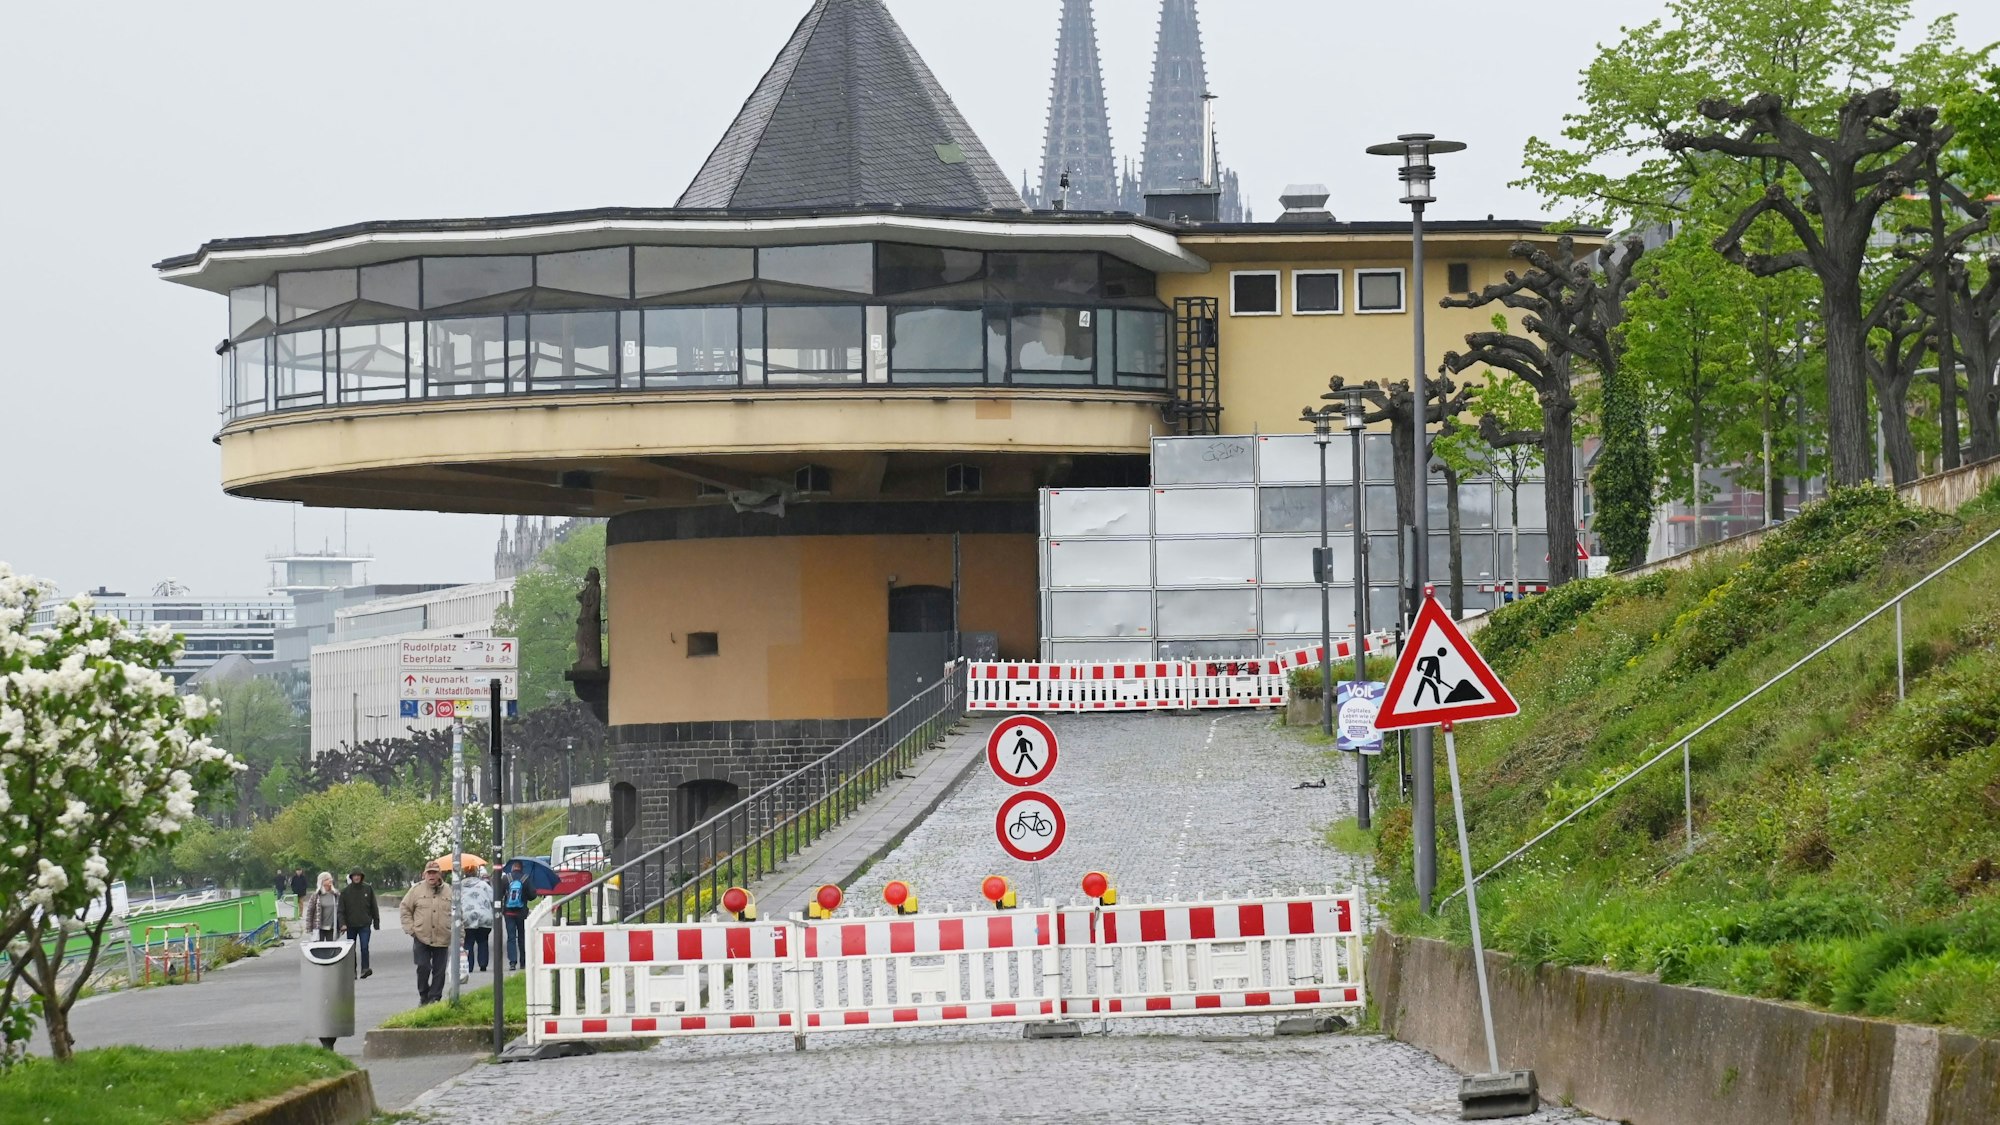 26.04.2022 Köln.
Der Busparkplatz an der Bastei ist gesperrt.